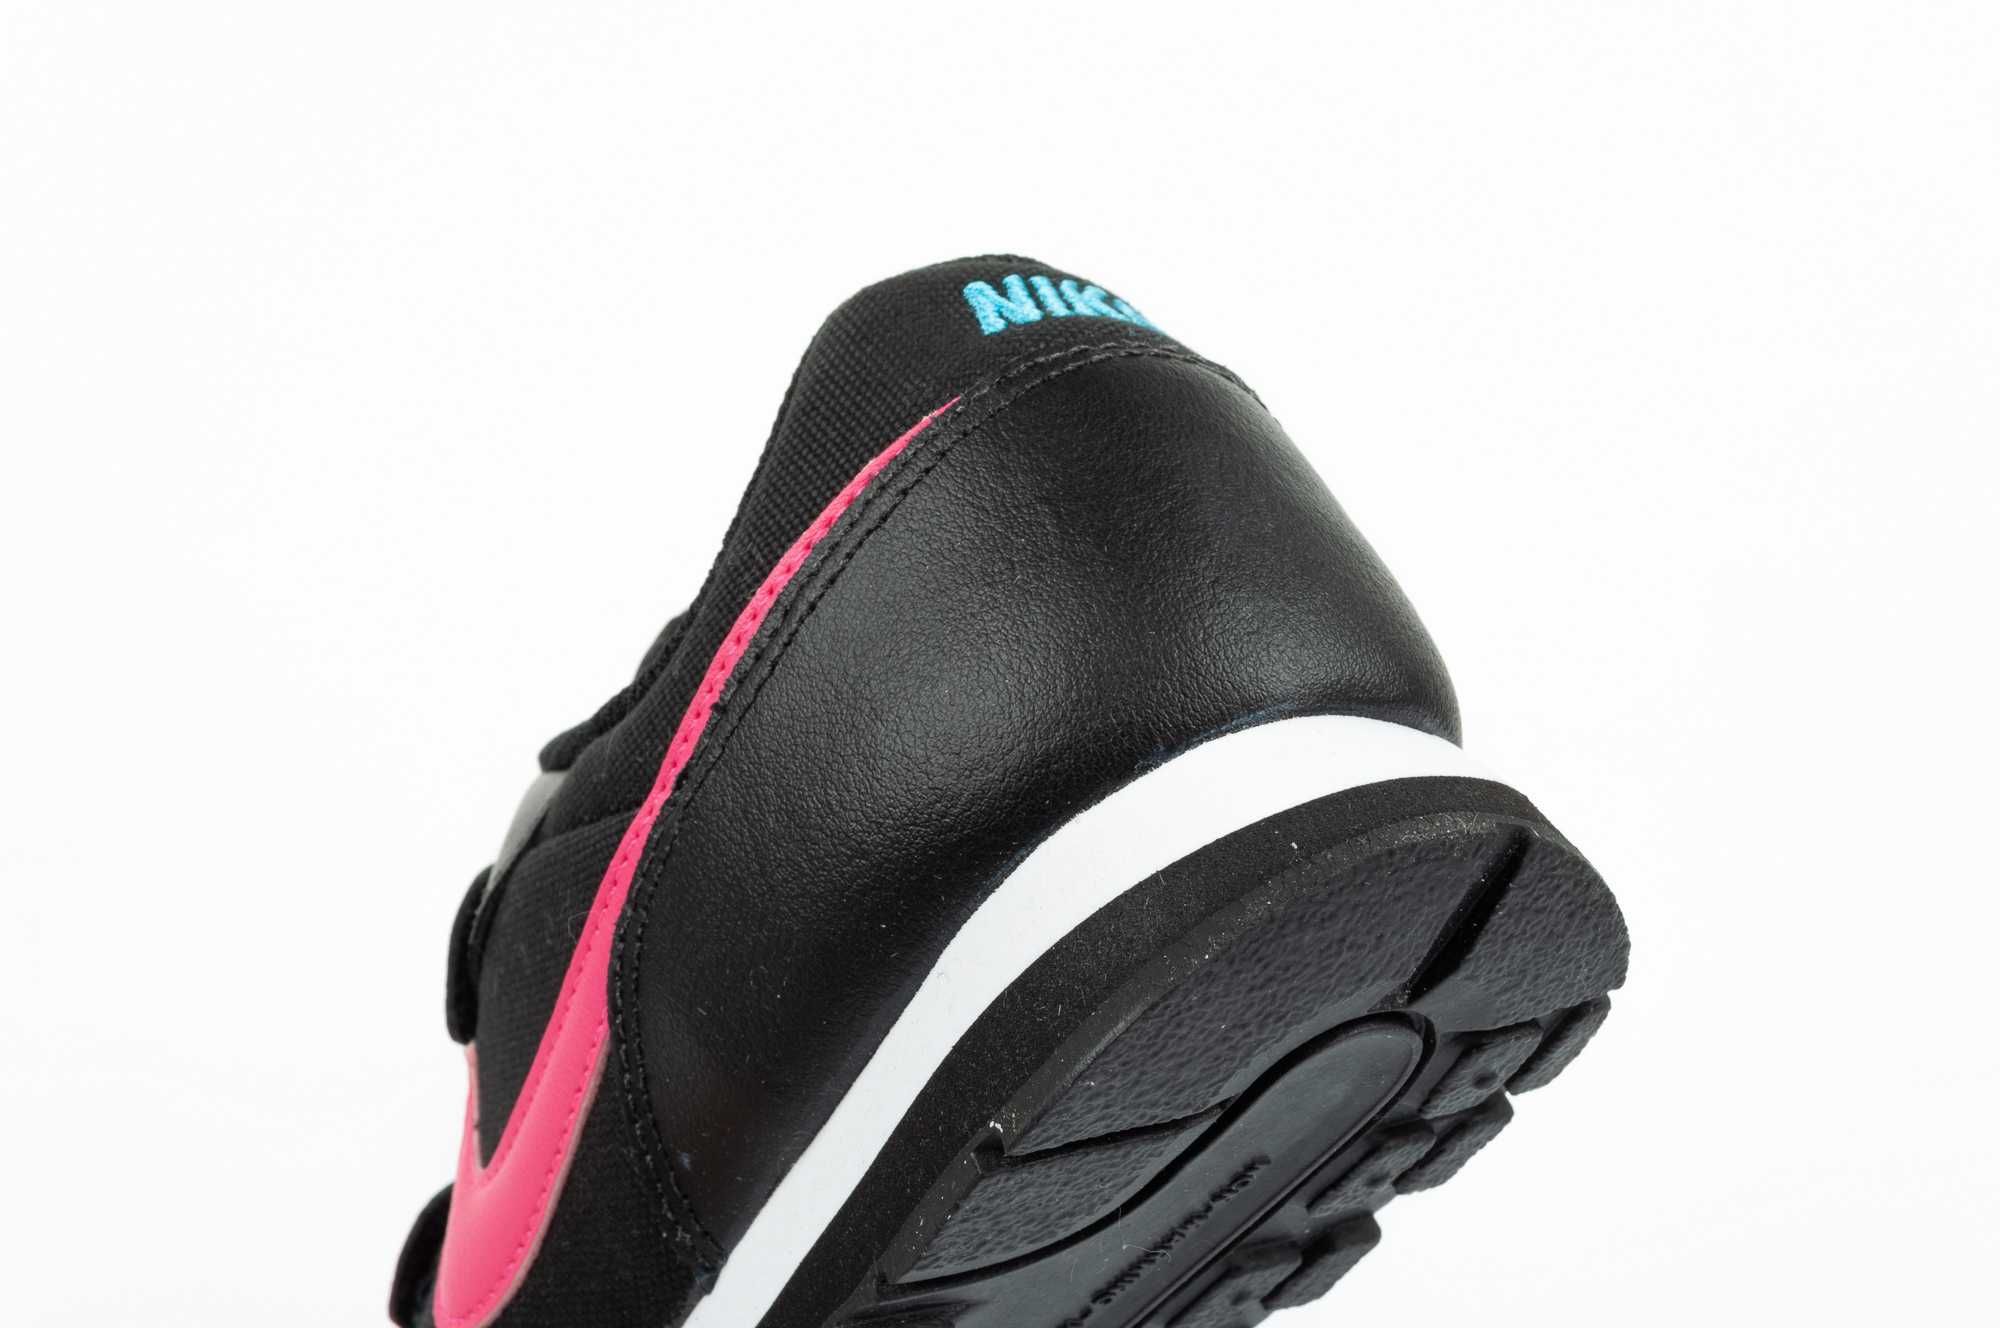 Buty sportowe dziecięce Nike Runner 2 różne rozmiary 33-35